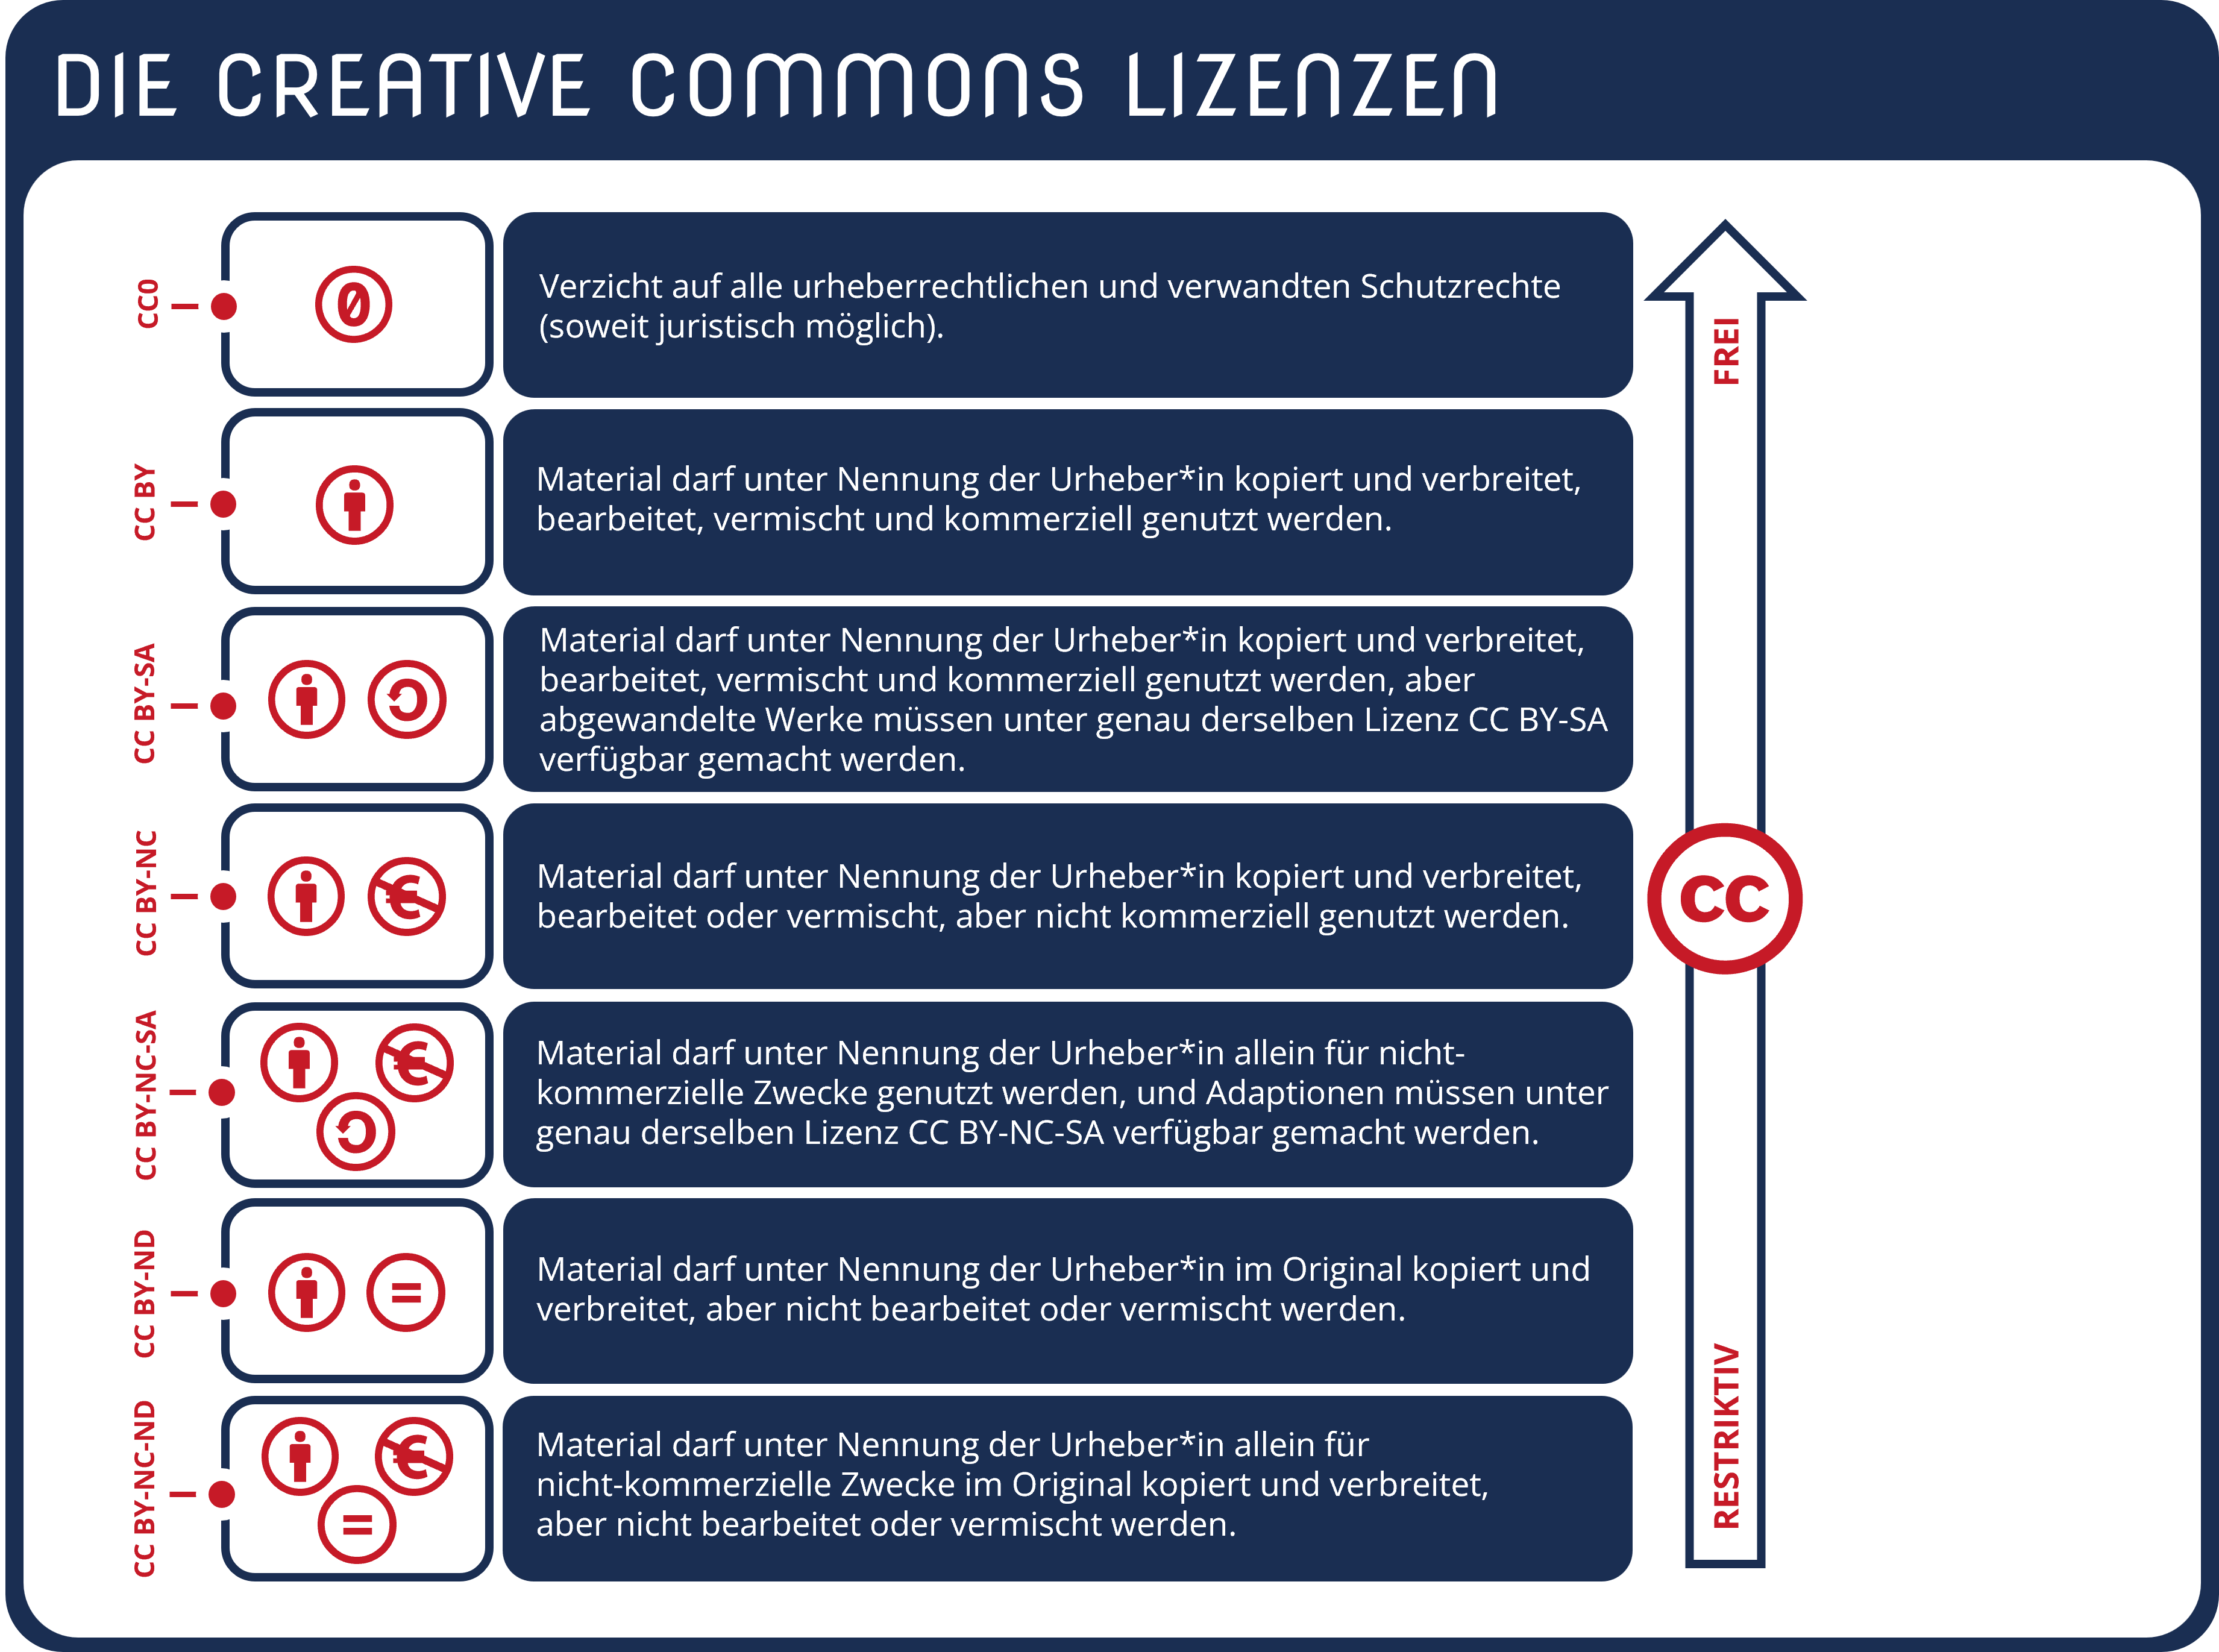 Übersichtsgrafik zu den sieben Creative Commons Lizenzen und ihren wesentlichen Bedeutungen: CC0, CC BY, CC BY-SA, CC BY-NC, CC BY-NC-SA, CC BY-ND und CC BY-NC-ND.